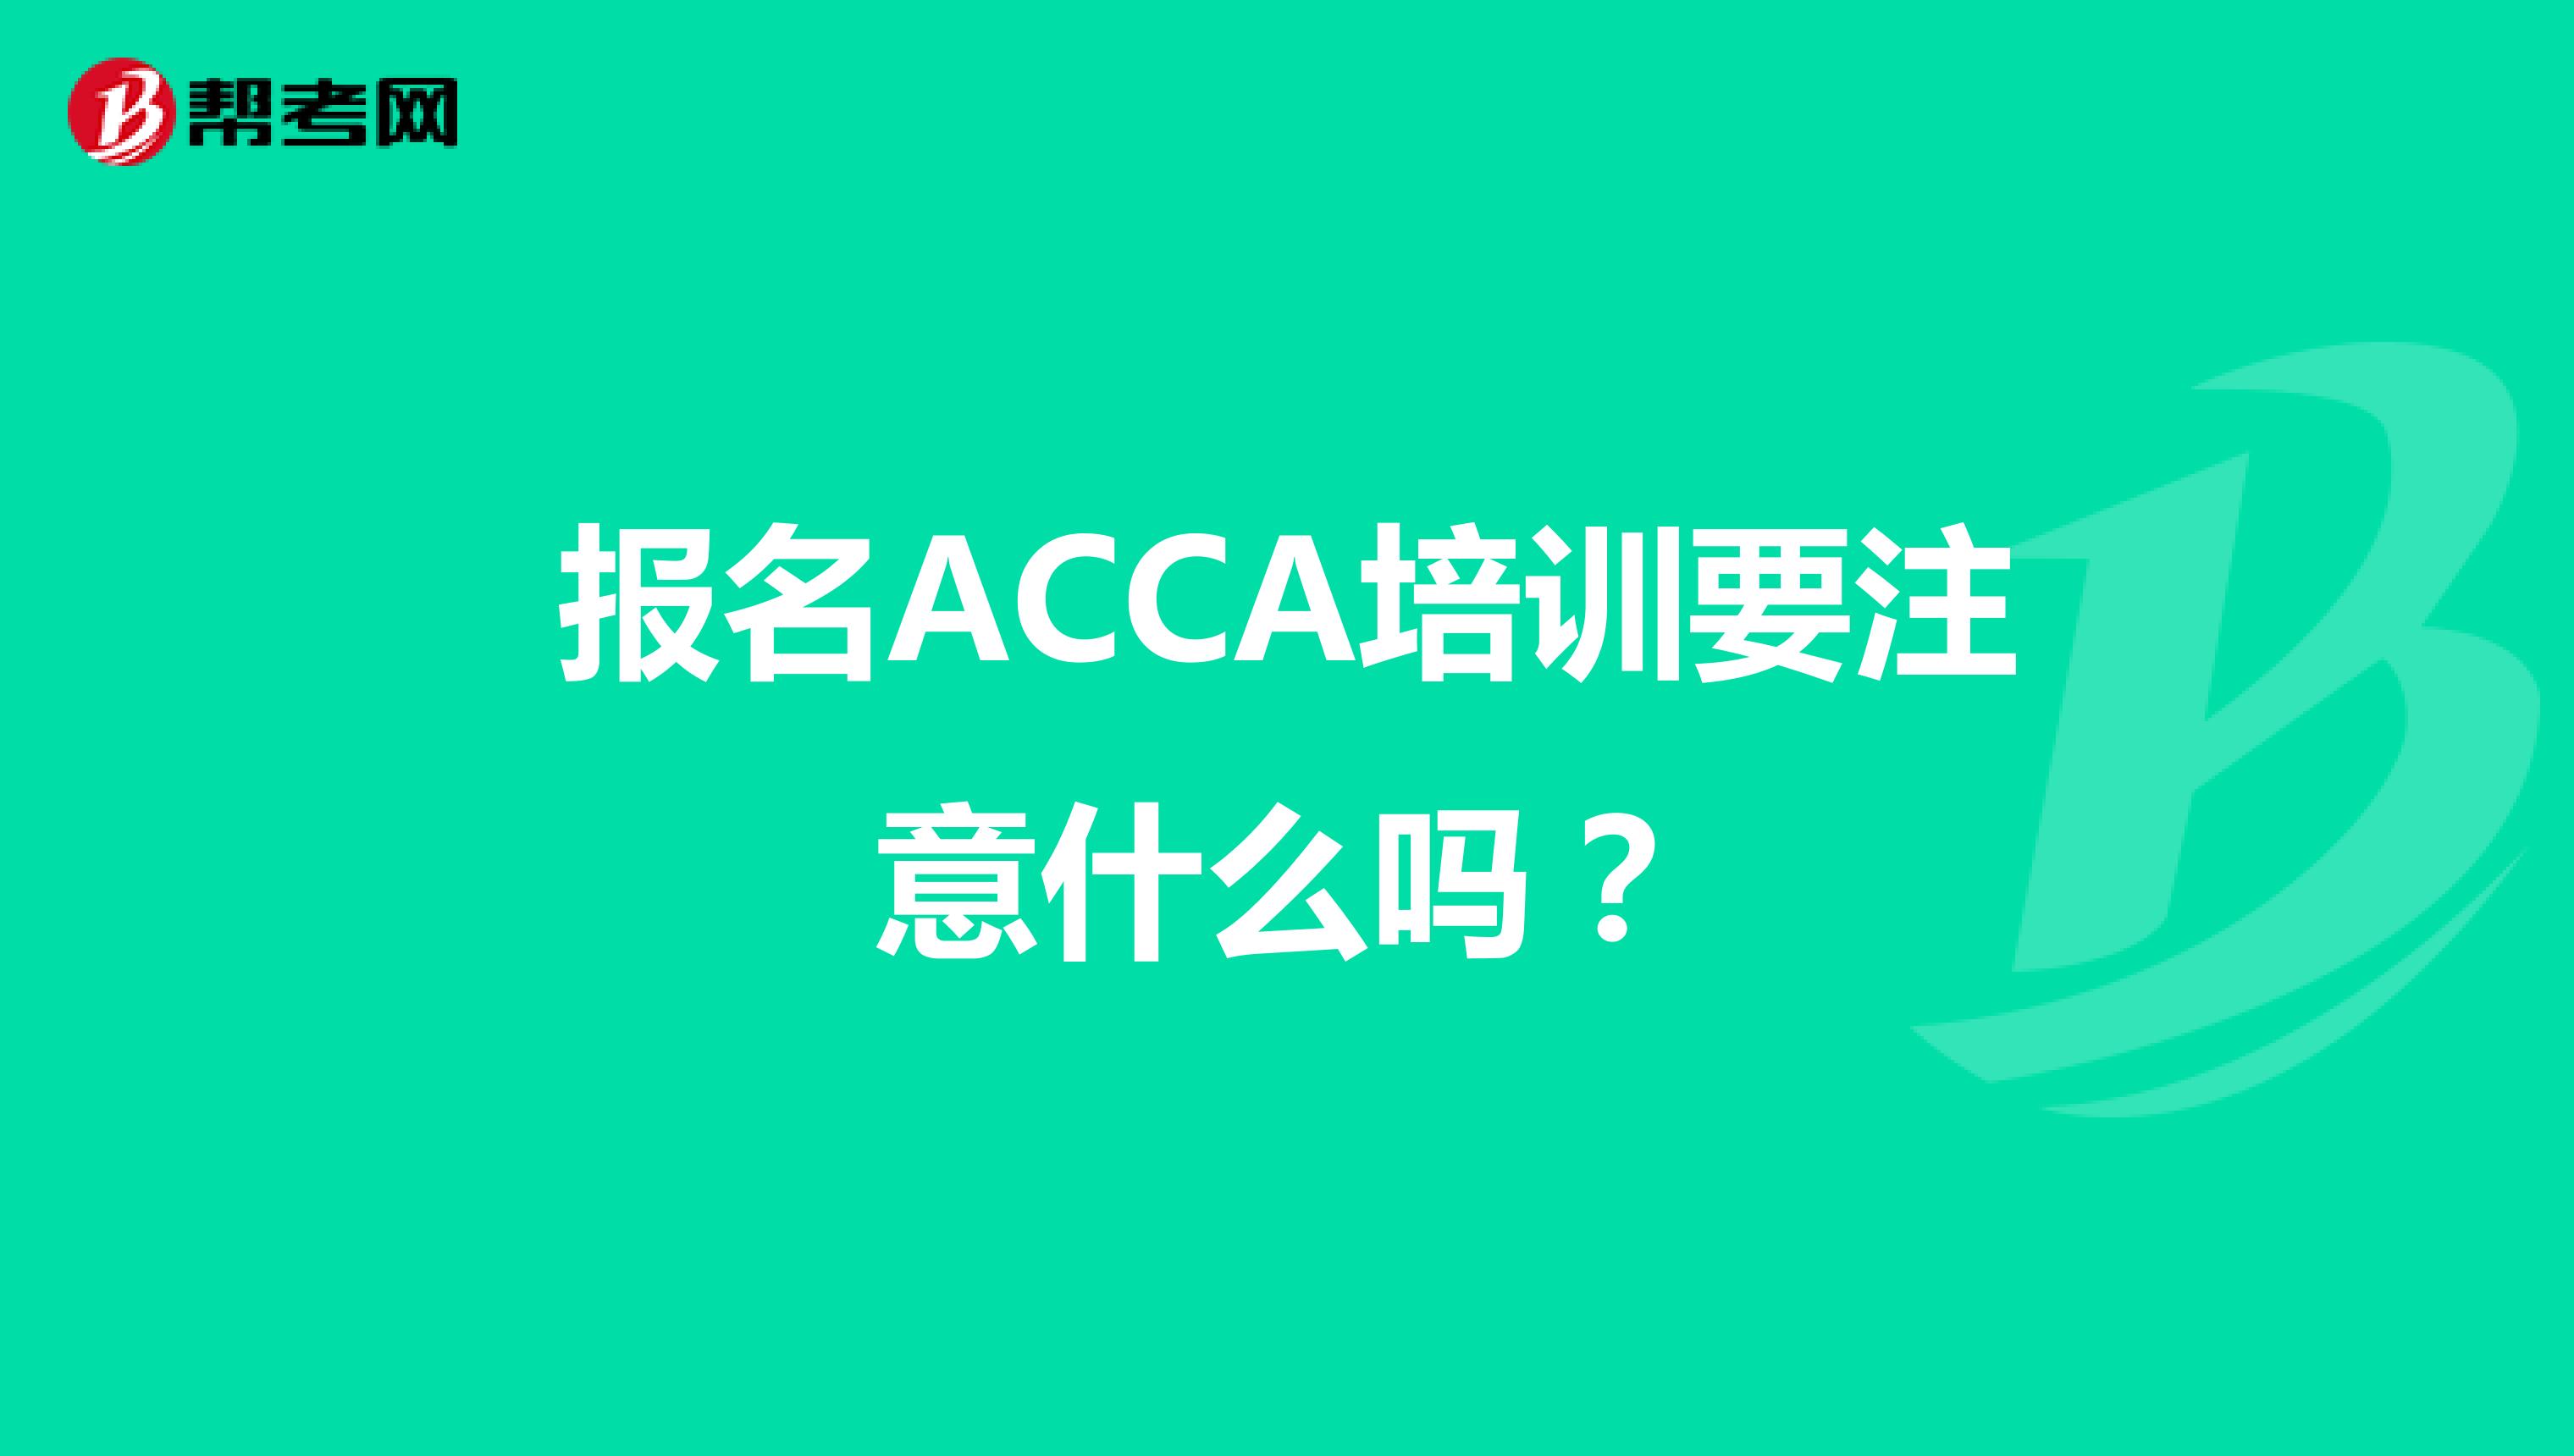 报名ACCA培训要注意什么吗？